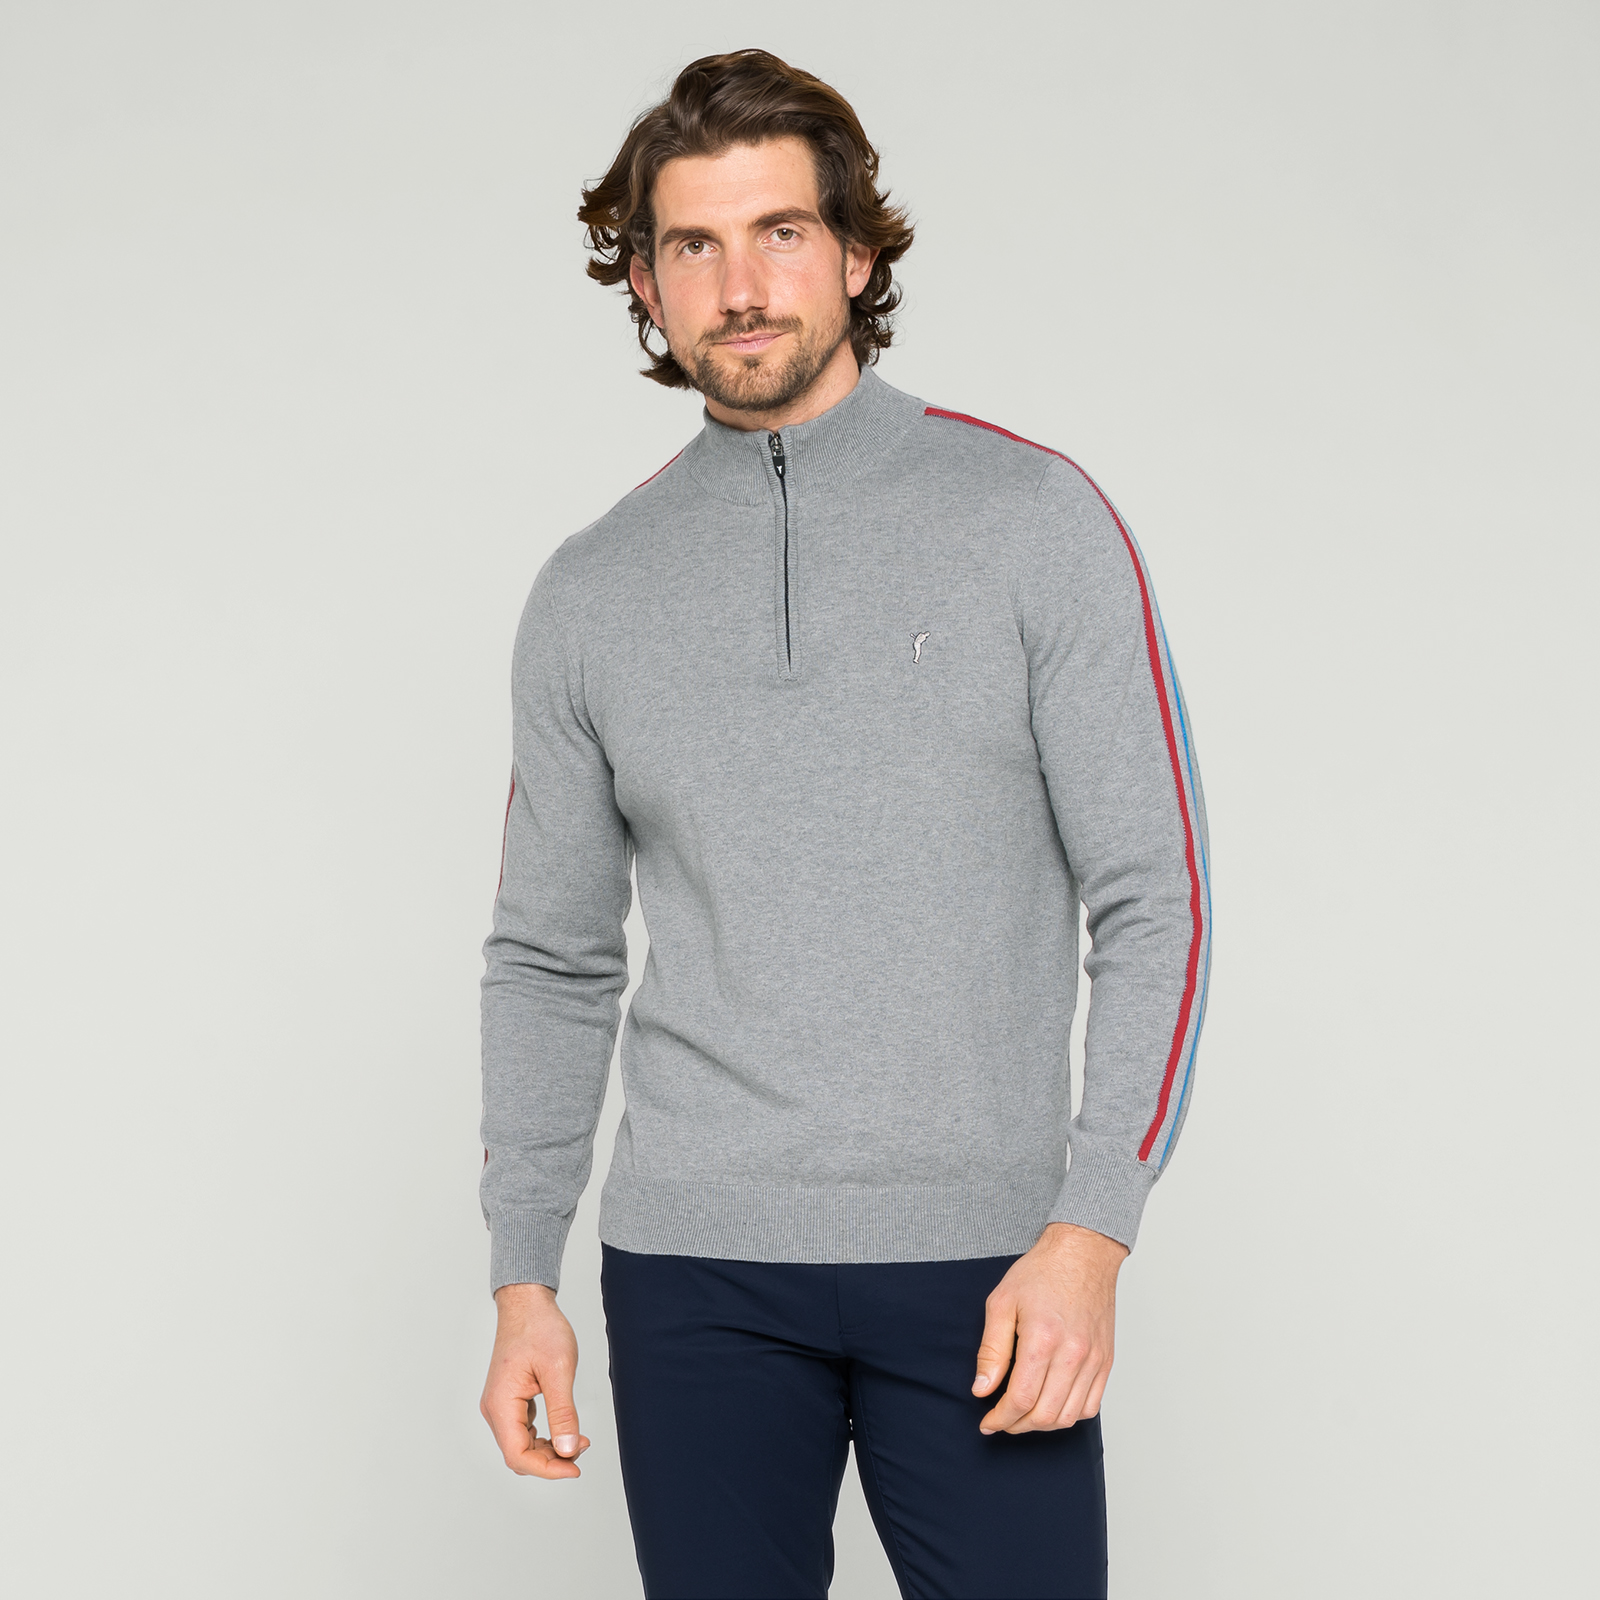 Sweatshirt confortable en laine mérinos pour hommes